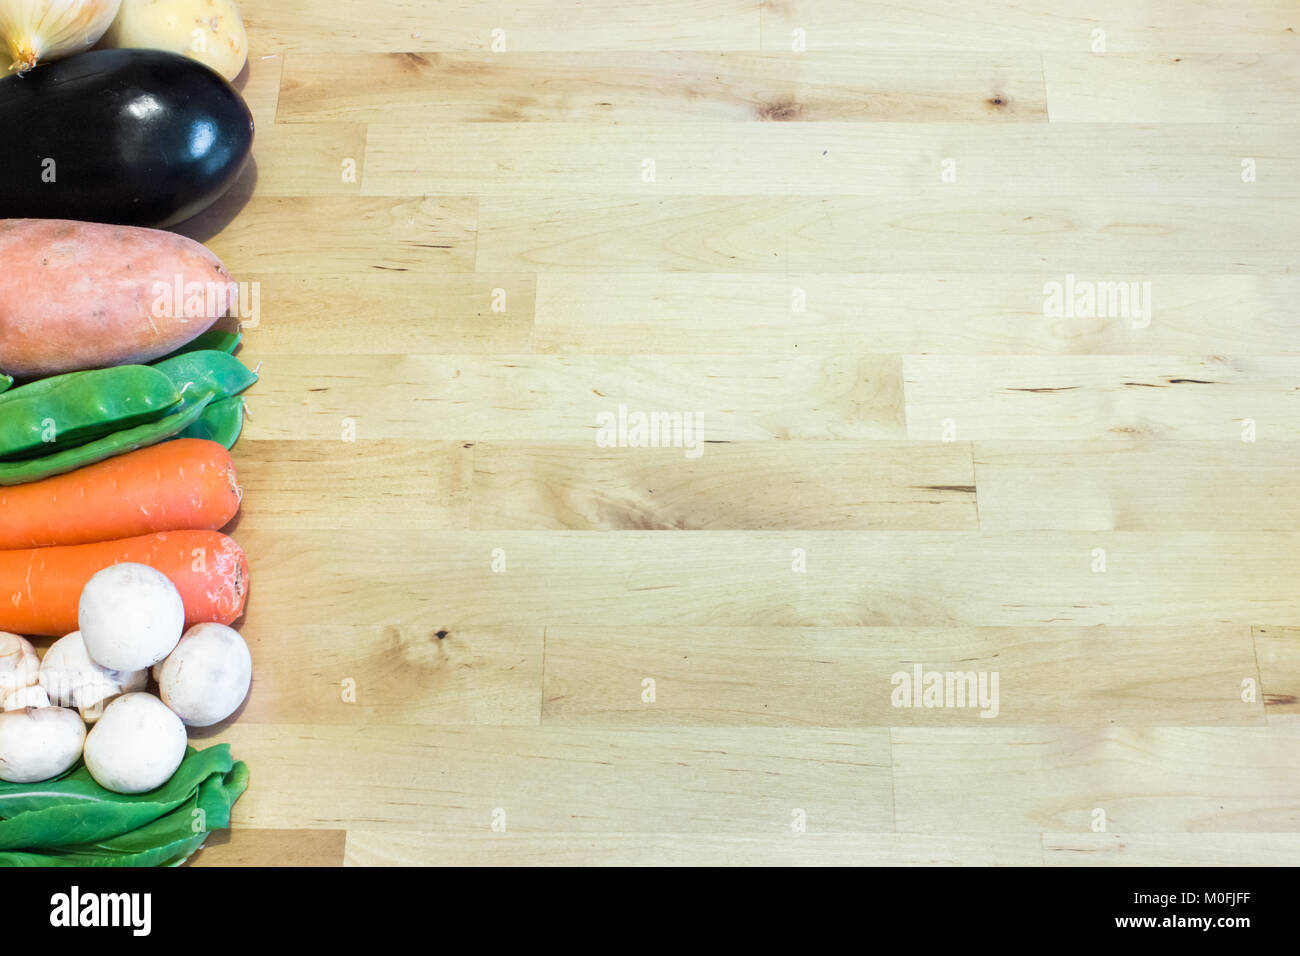 Gemüse aufgereiht auf Holz- Hintergrund mit leeren Raum für Text, Gestaltung oder Einrichtung. Gesunde vegetarische, vegane Ernährung, der Begriff. Stockfoto